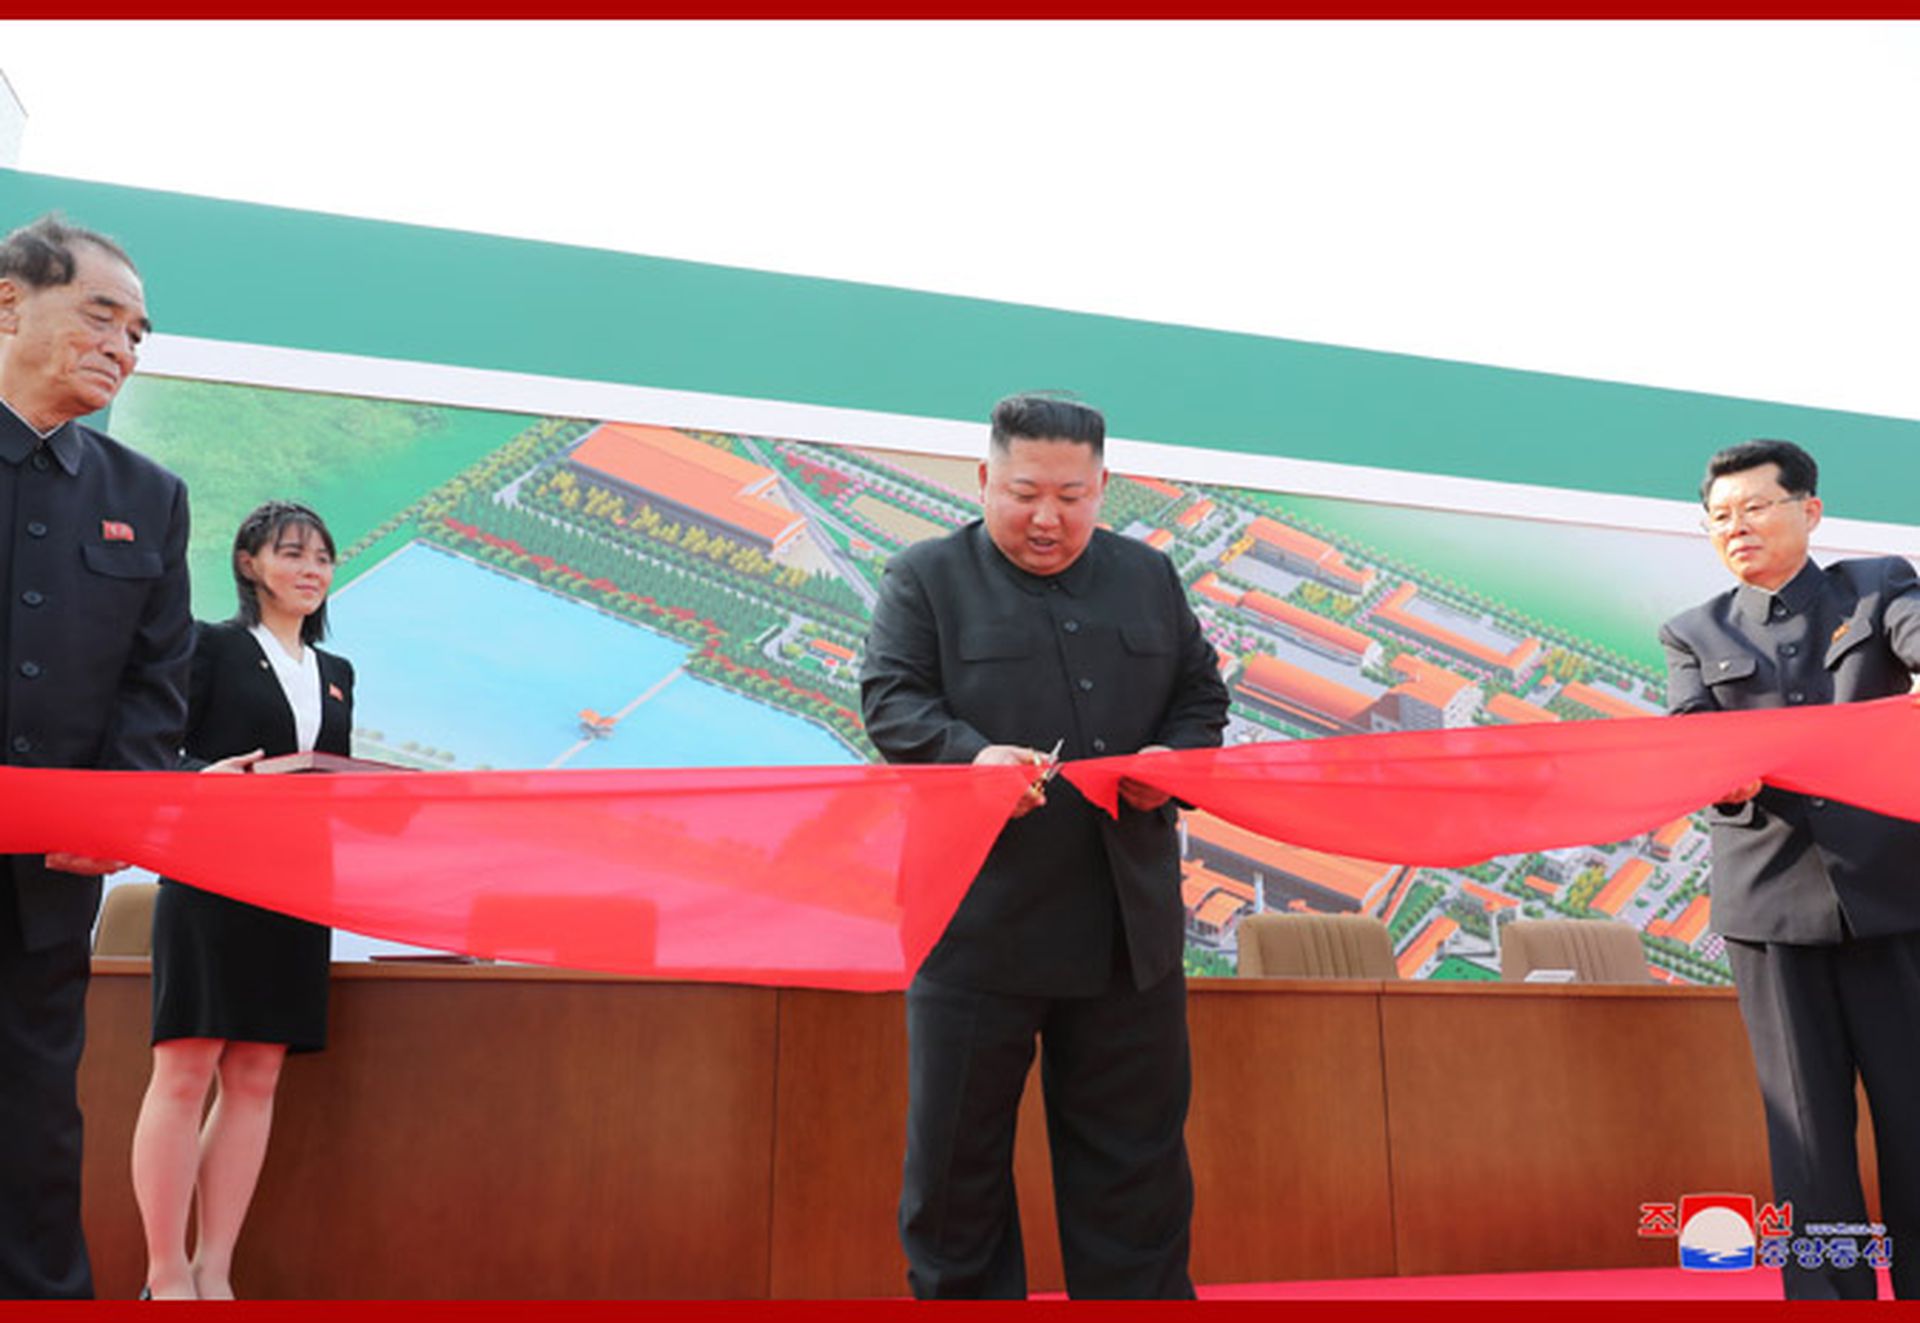 朝鲜官方媒体朝中社5月2日公开金正恩出席顺天磷肥厂竣工仪式，亲自剪彩画面。（朝中社）